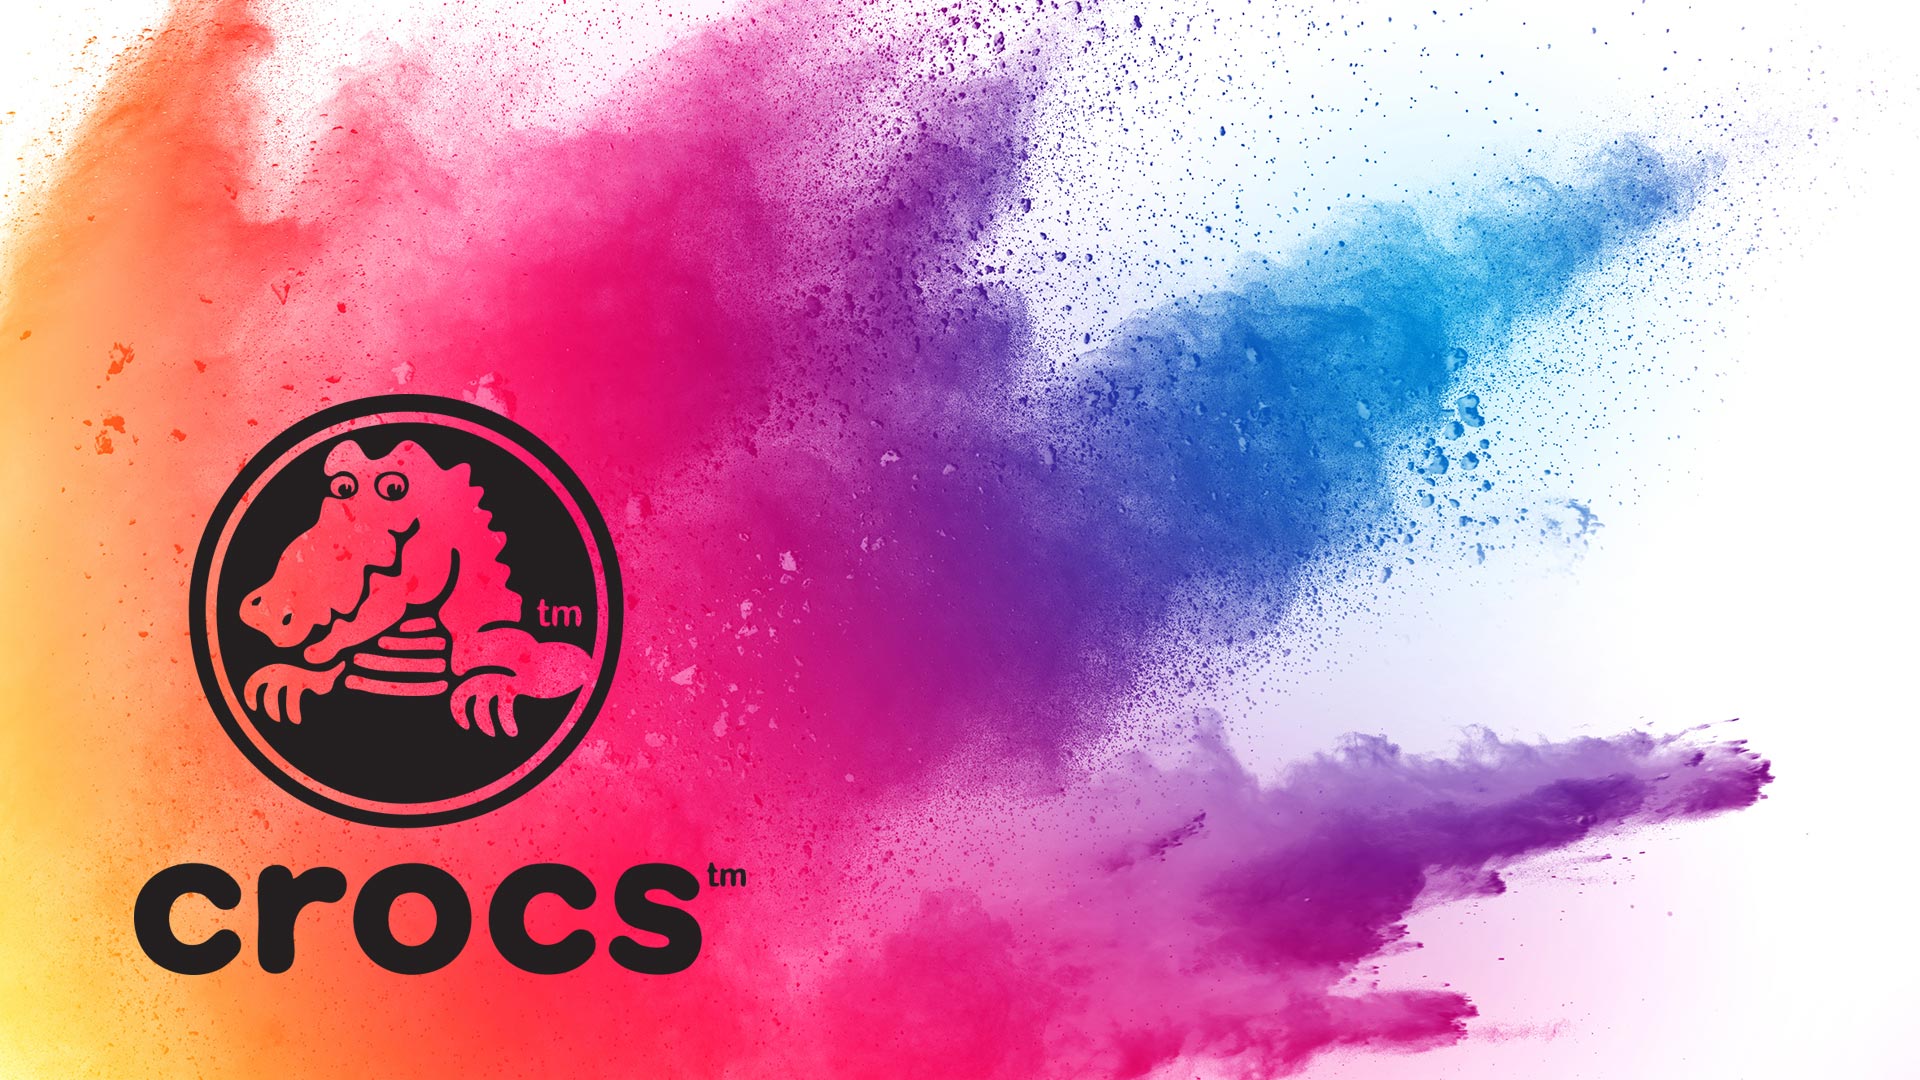 crocs logo 2019